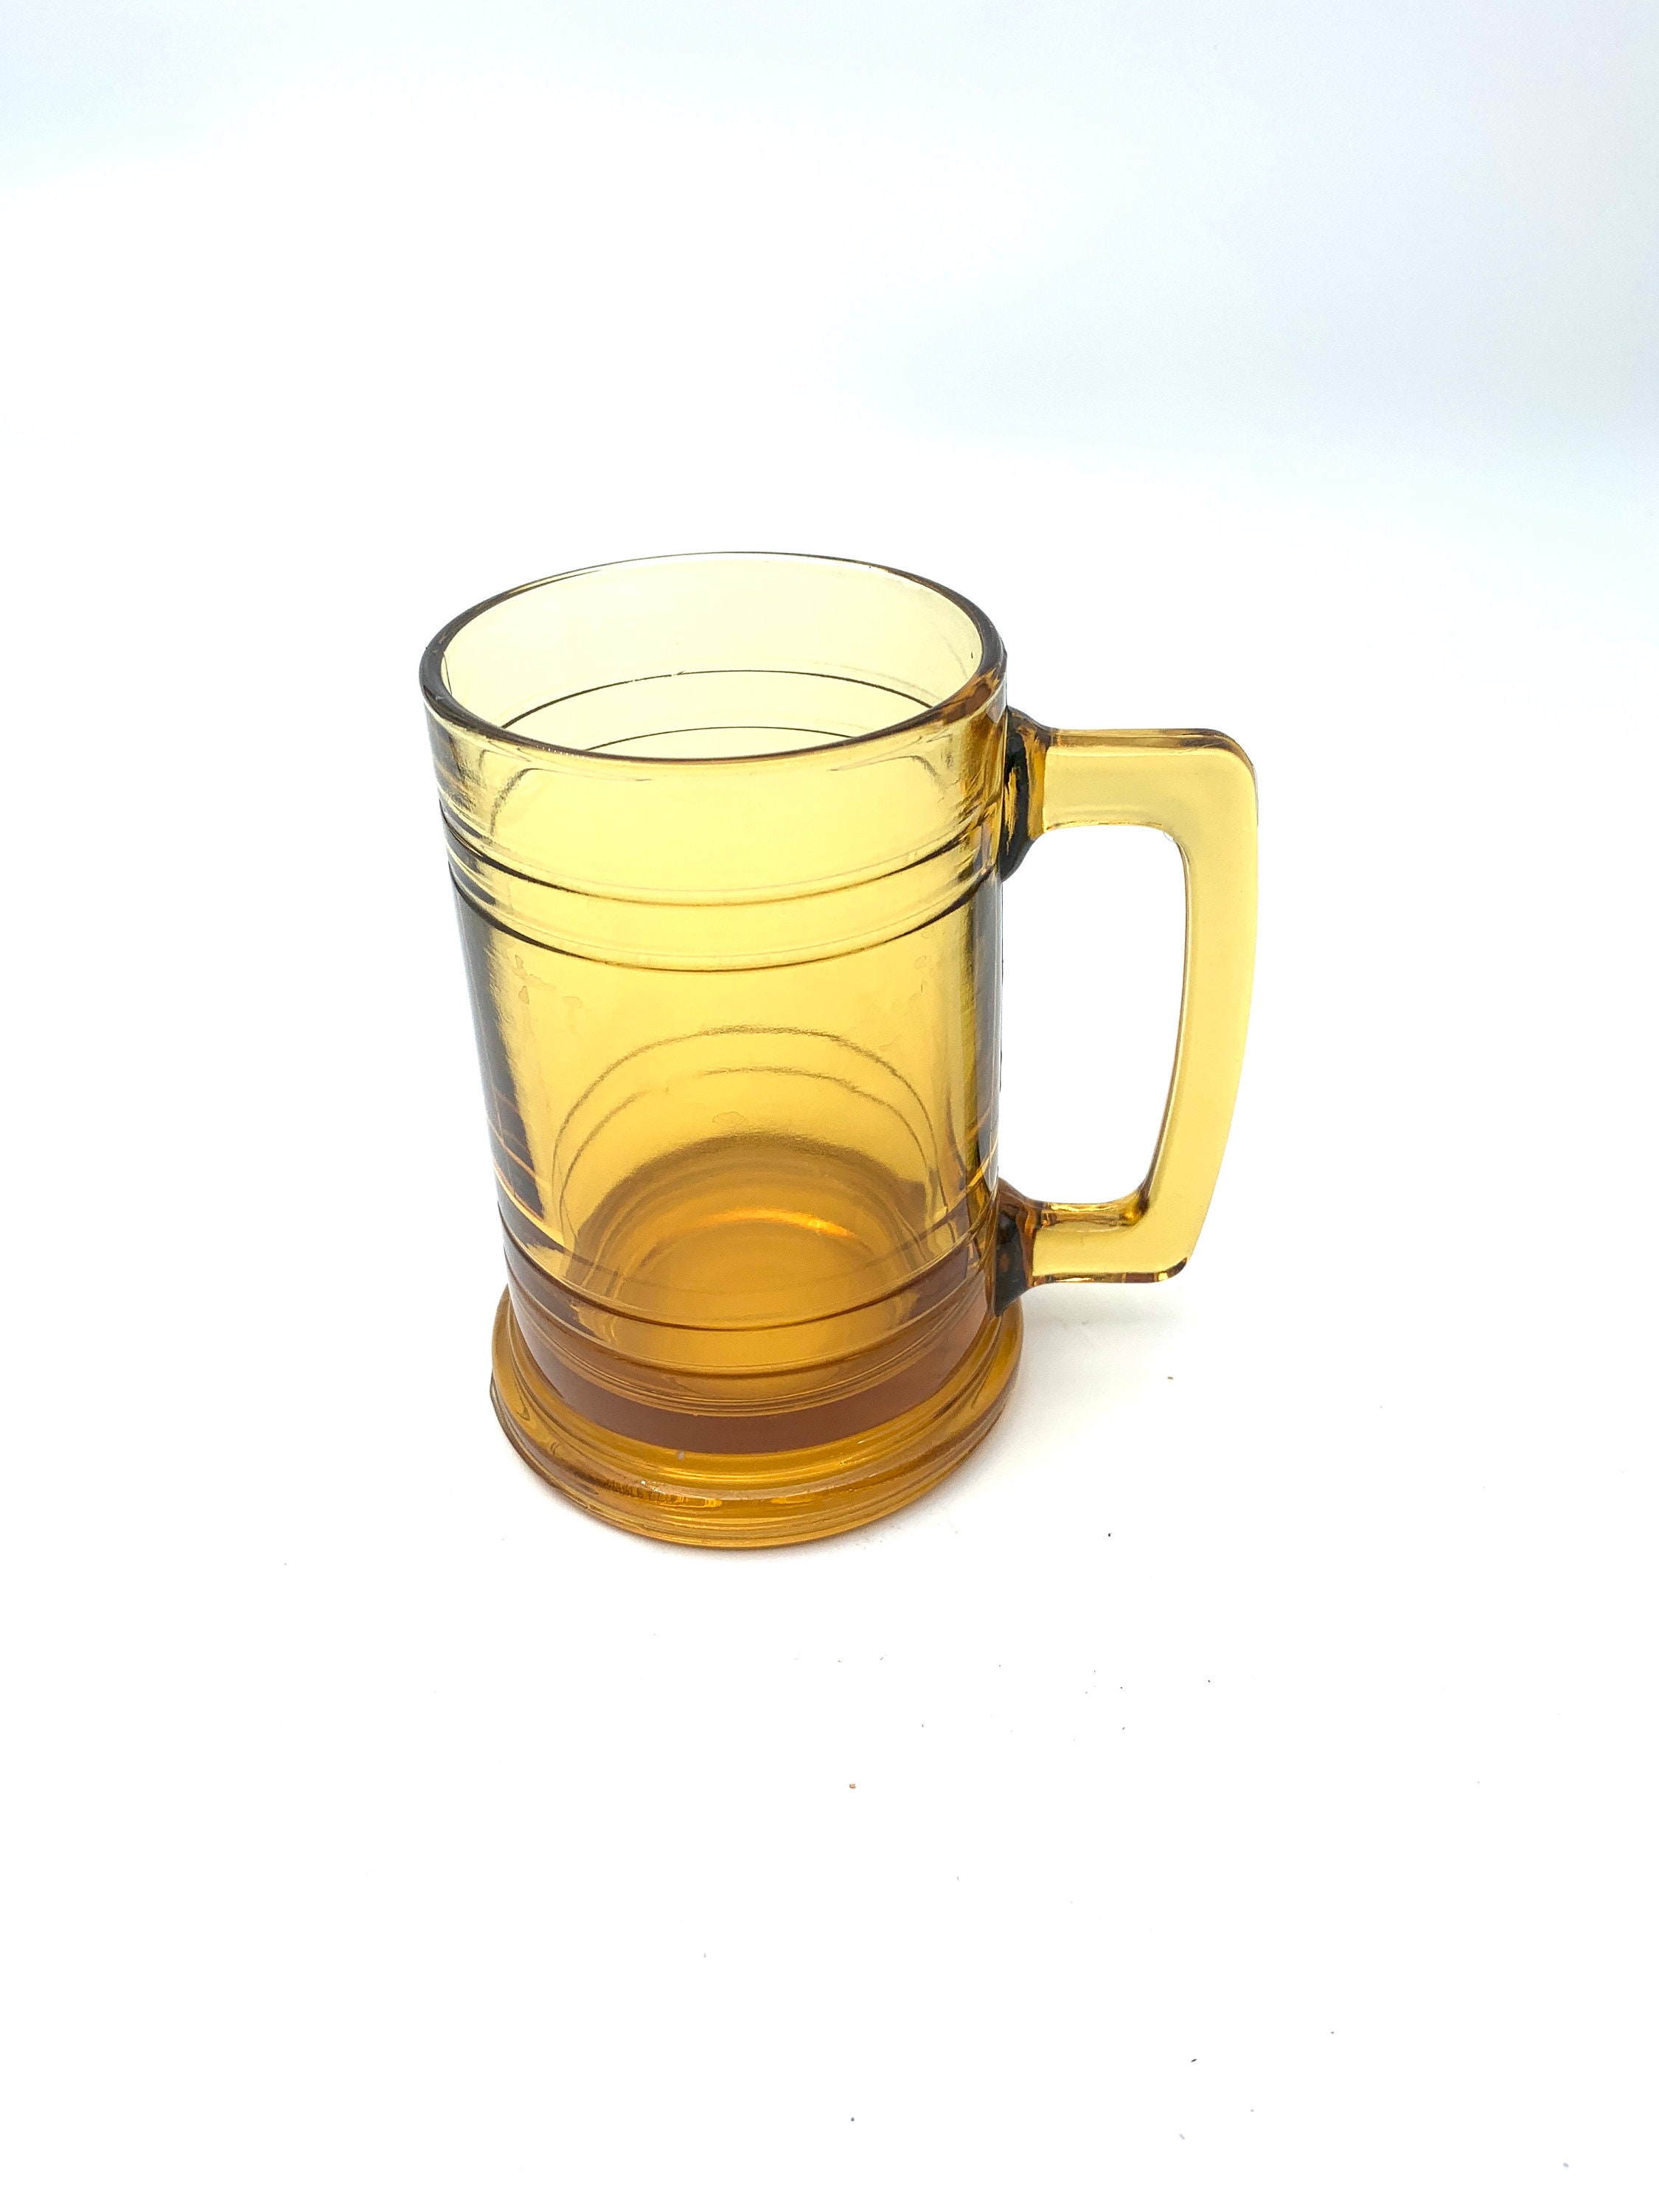 Amber Leopard Spot Crystal Glass Cup Medieval Vintage Drinkware Glassware  Handmade Egg Shape Water Teacup Wine Goblet Beer Mug